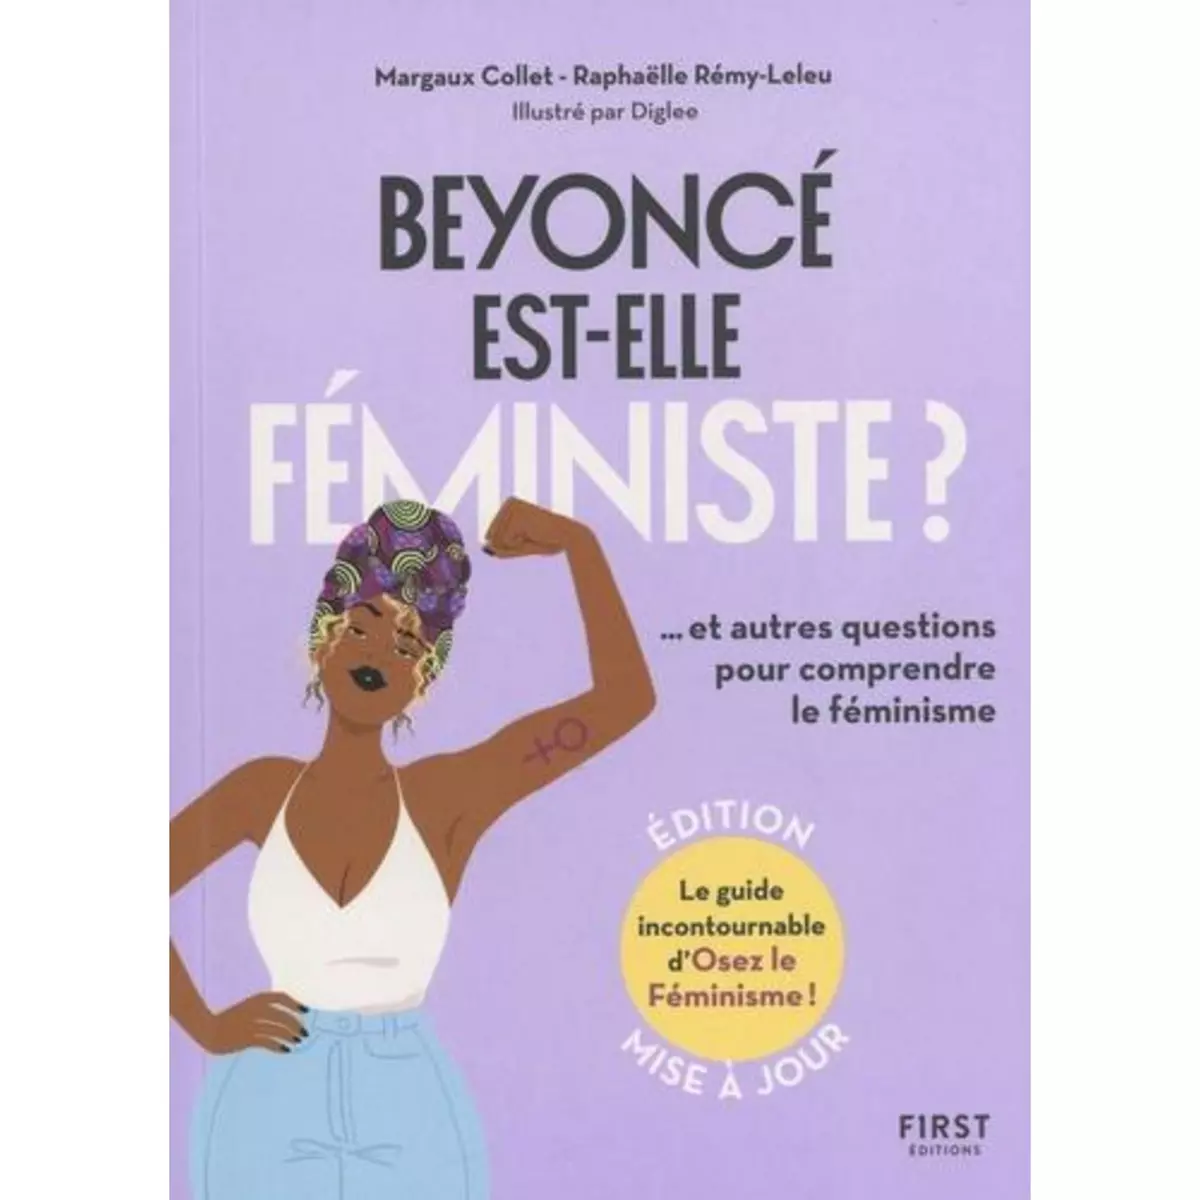  BEYONCE EST-ELLE FEMINISTE ? ET AUTRES QUESTIONS POUR COMPRENDRE LE FEMINISME, 2E EDITION ACTUALISEE, Collet Margaux